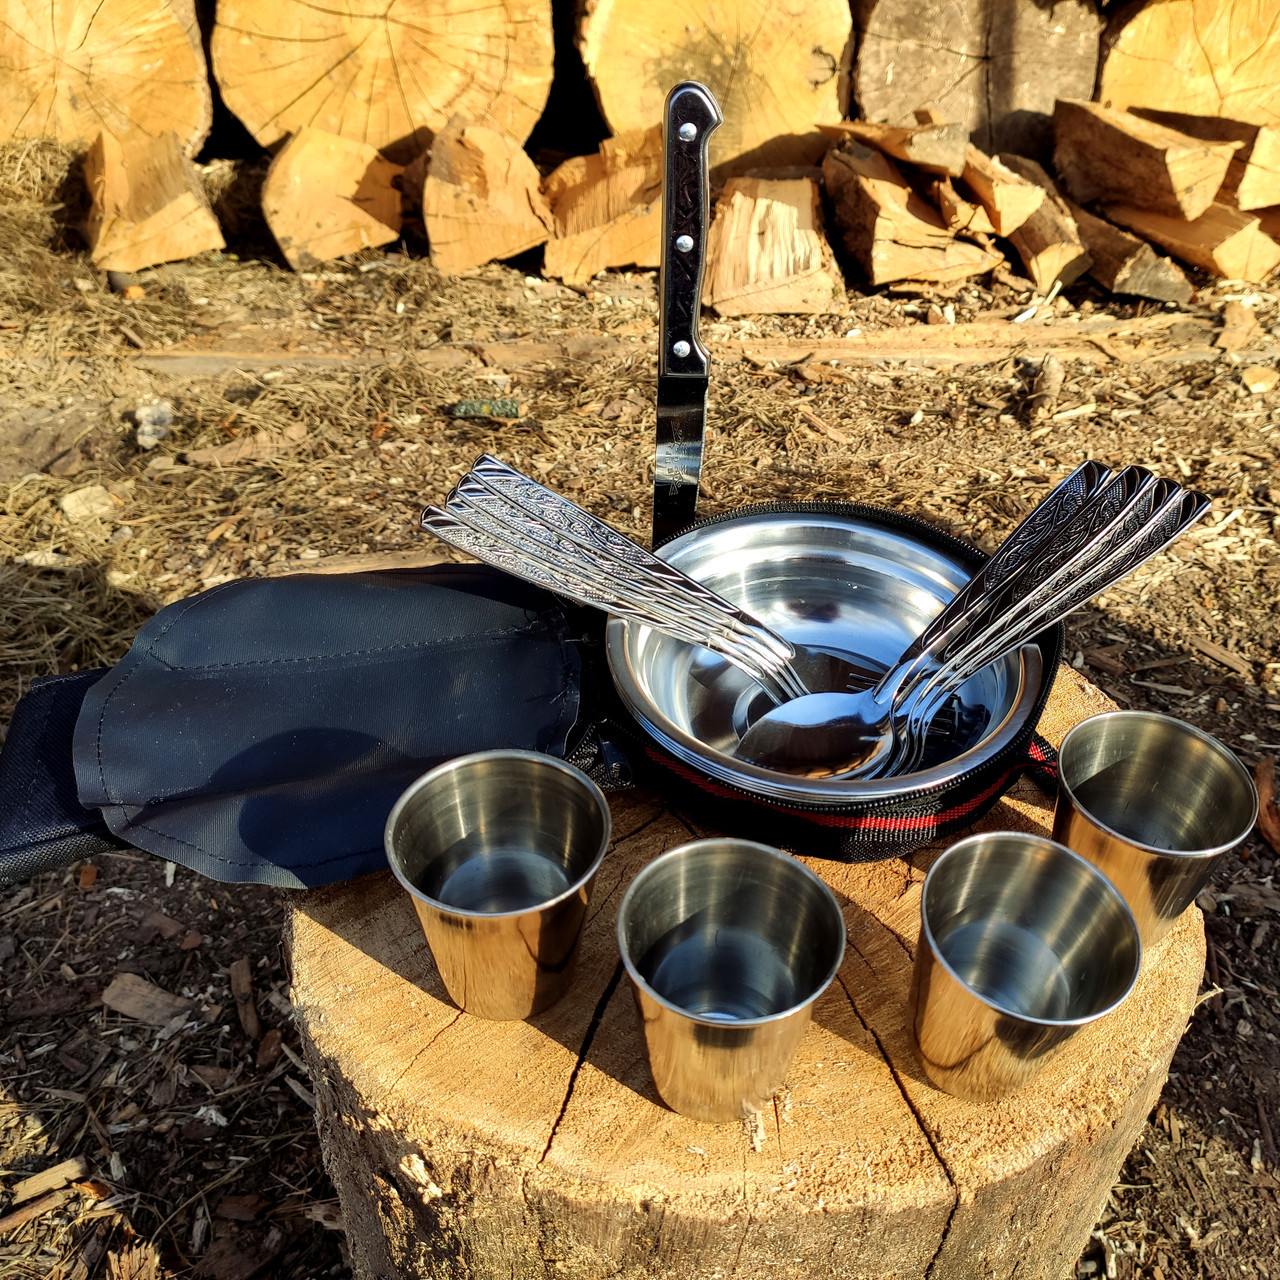 Походный набор посуды для пикника туристический из нержавейки на 6 персон в чехле, фото 6